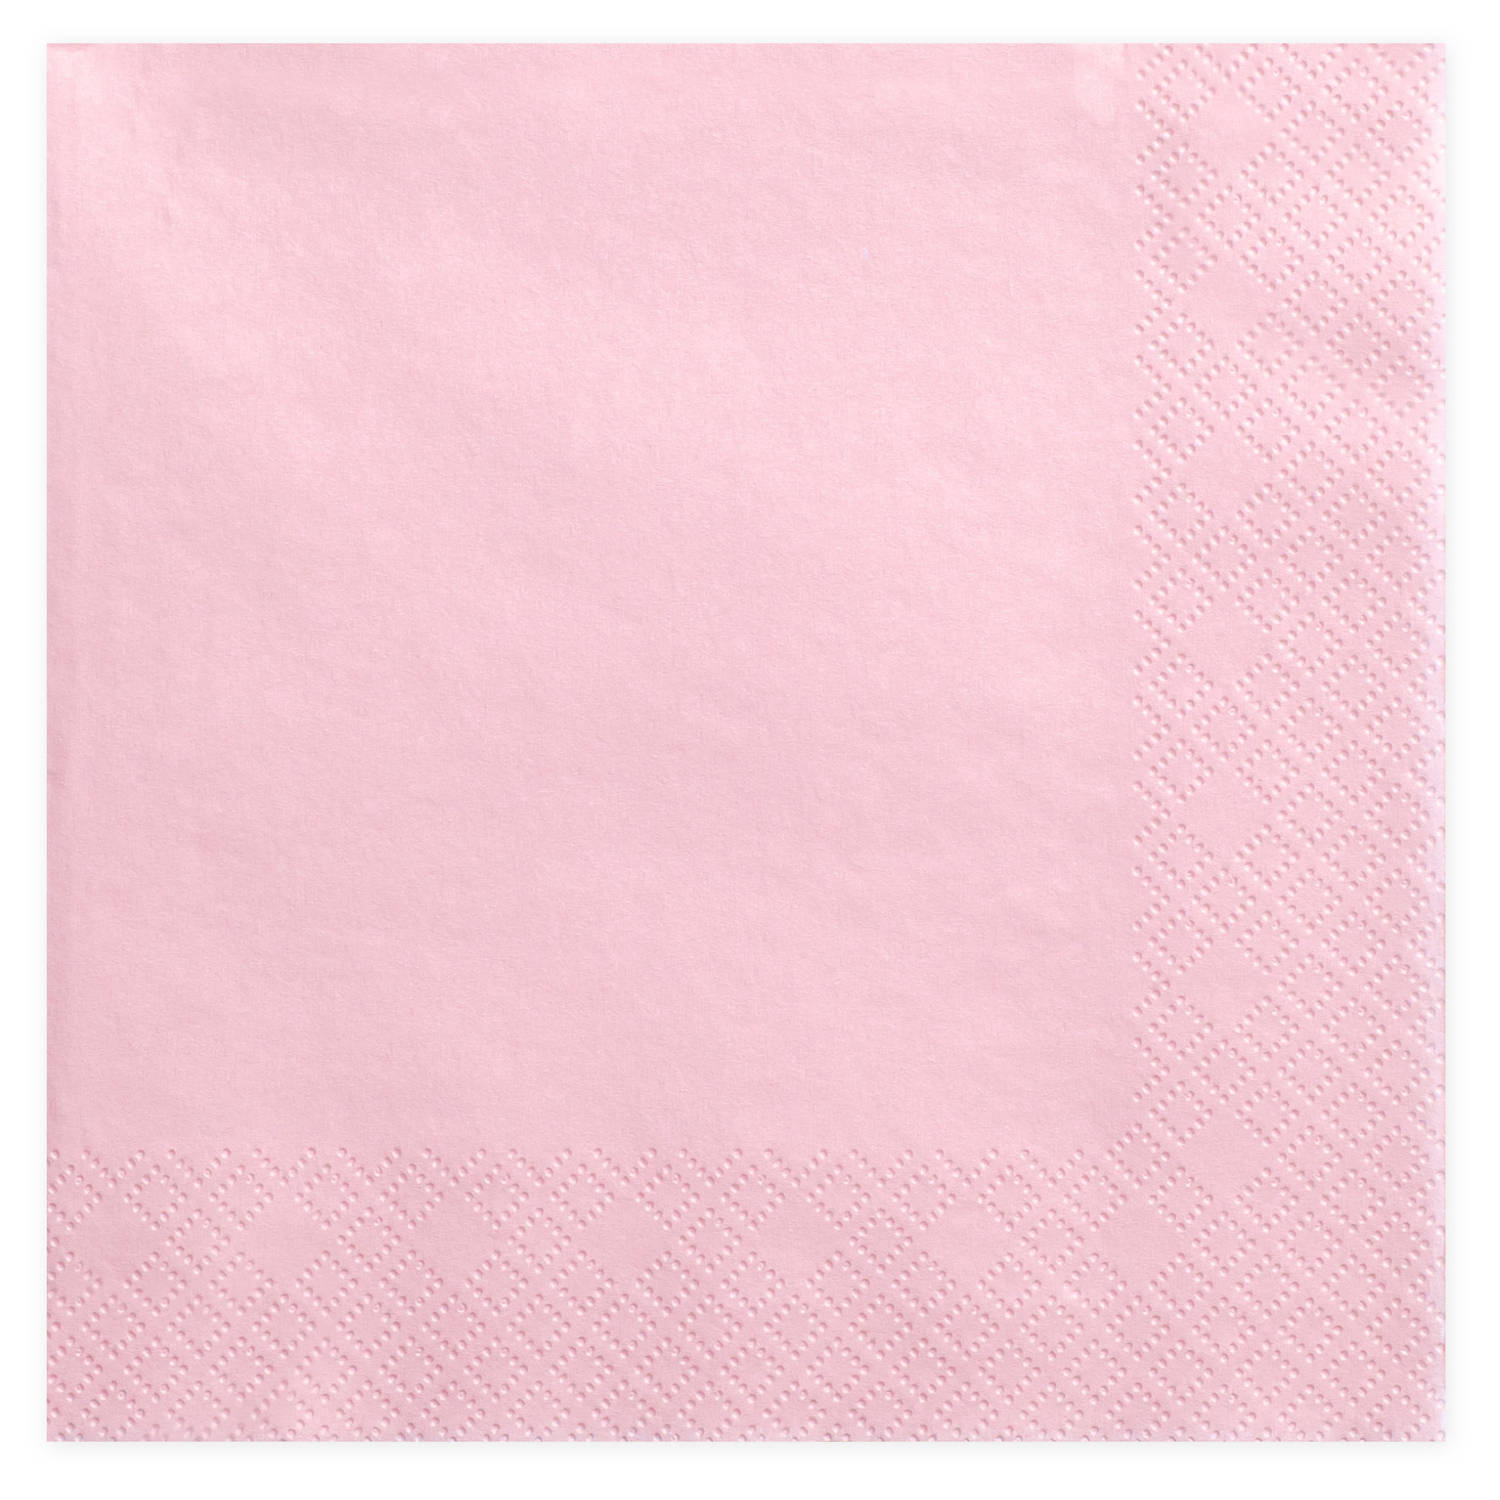 20x Papieren tafel servetten roze 33 x 33 cm - Feestservetten